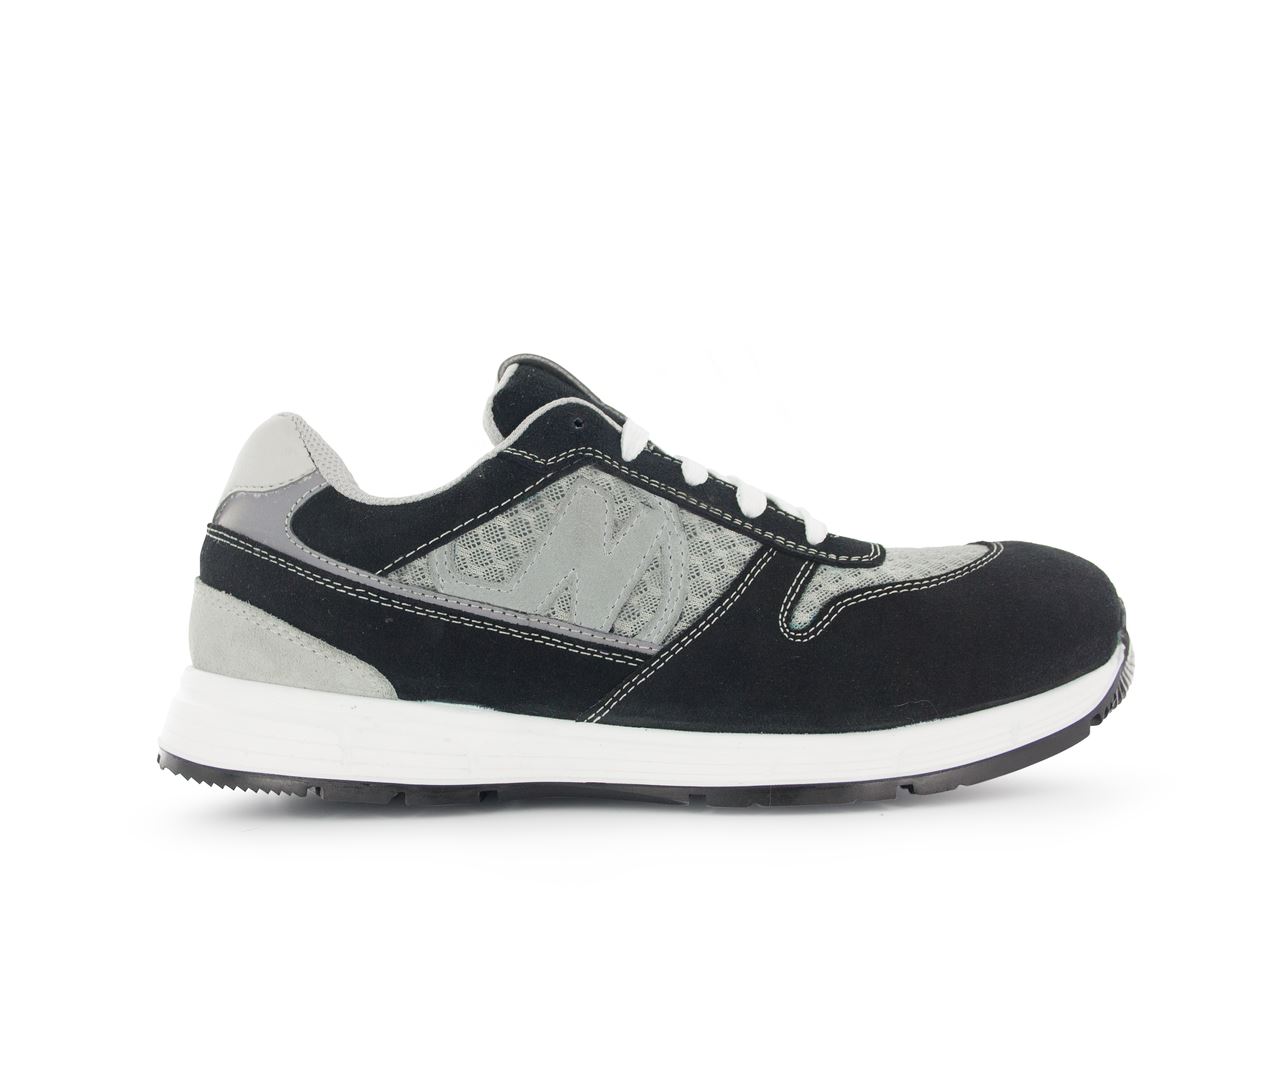 Chaussure de sécurité noir/gris Run Soft T.44 - Nord'Ways - RUN000244000NOGR